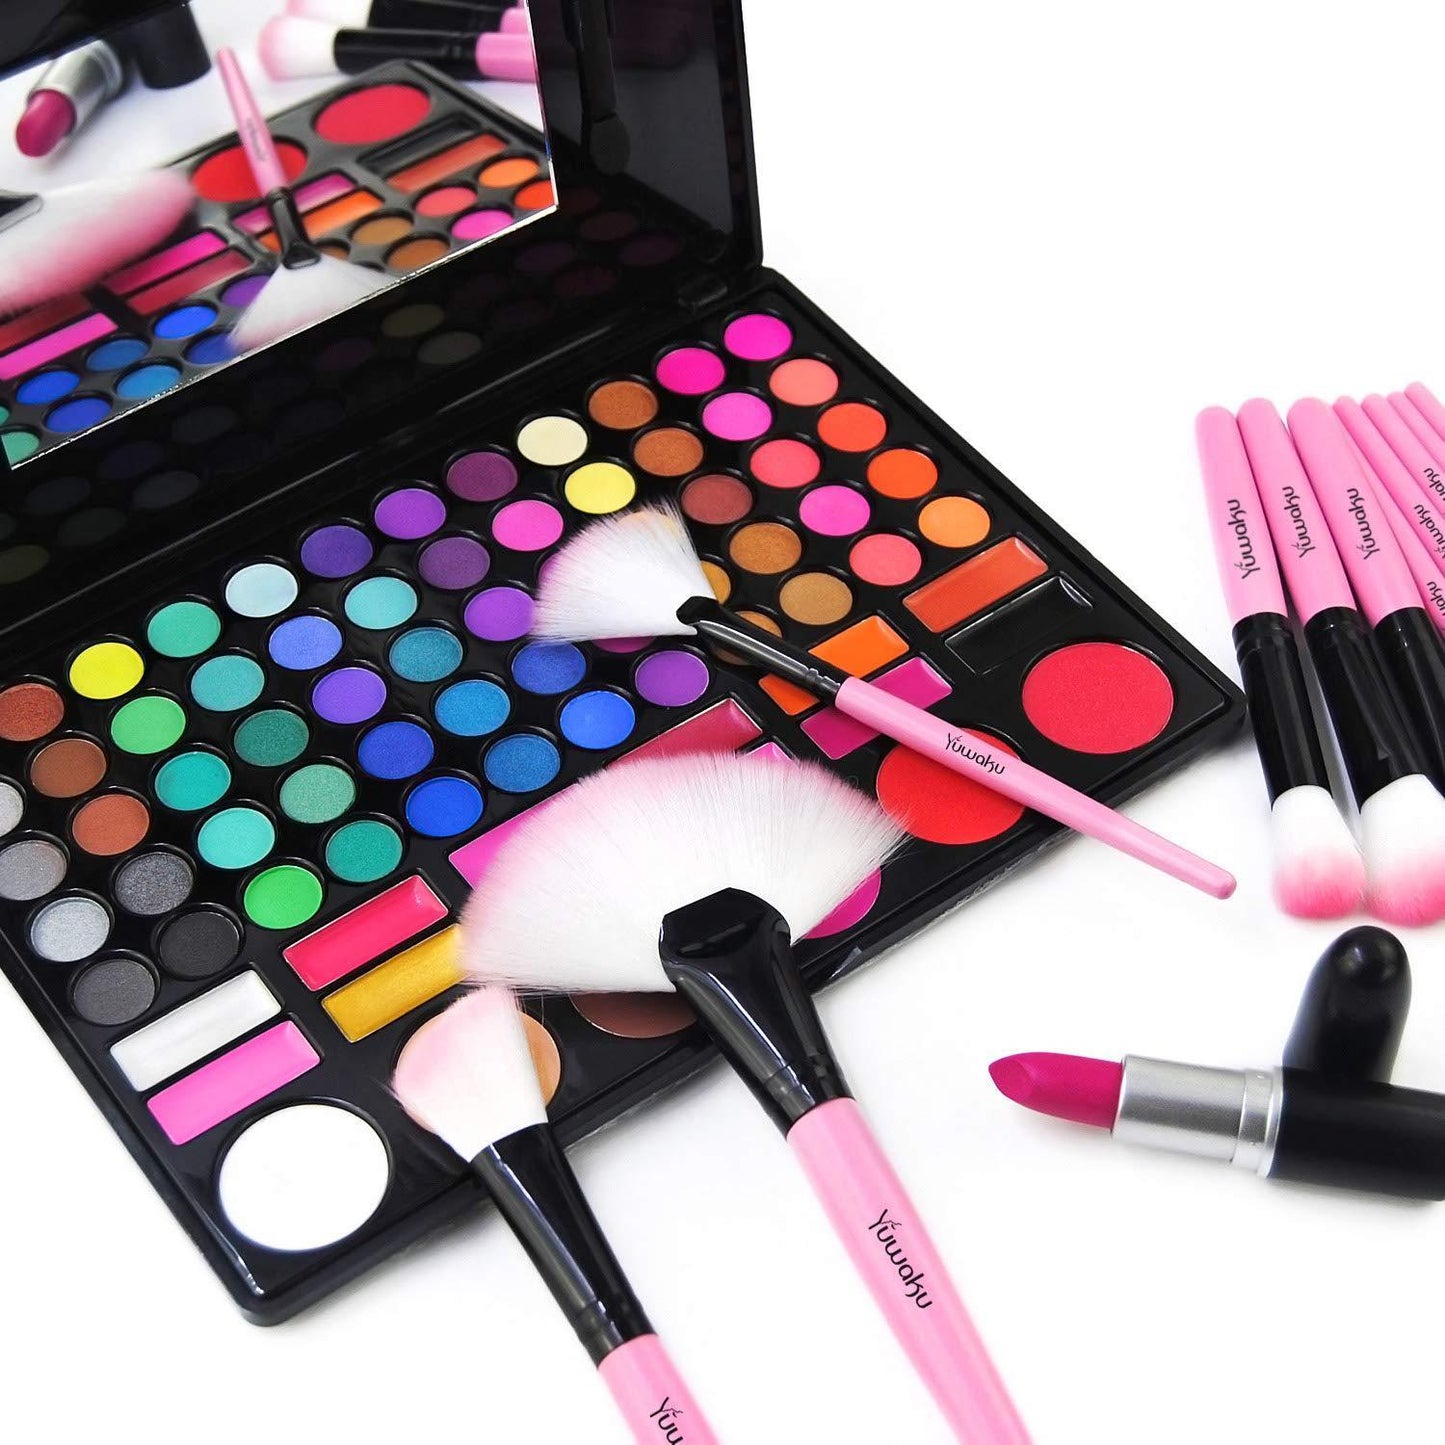 32 Pieces Professional Makeup Makeup Brush Kit with Makeup Bag